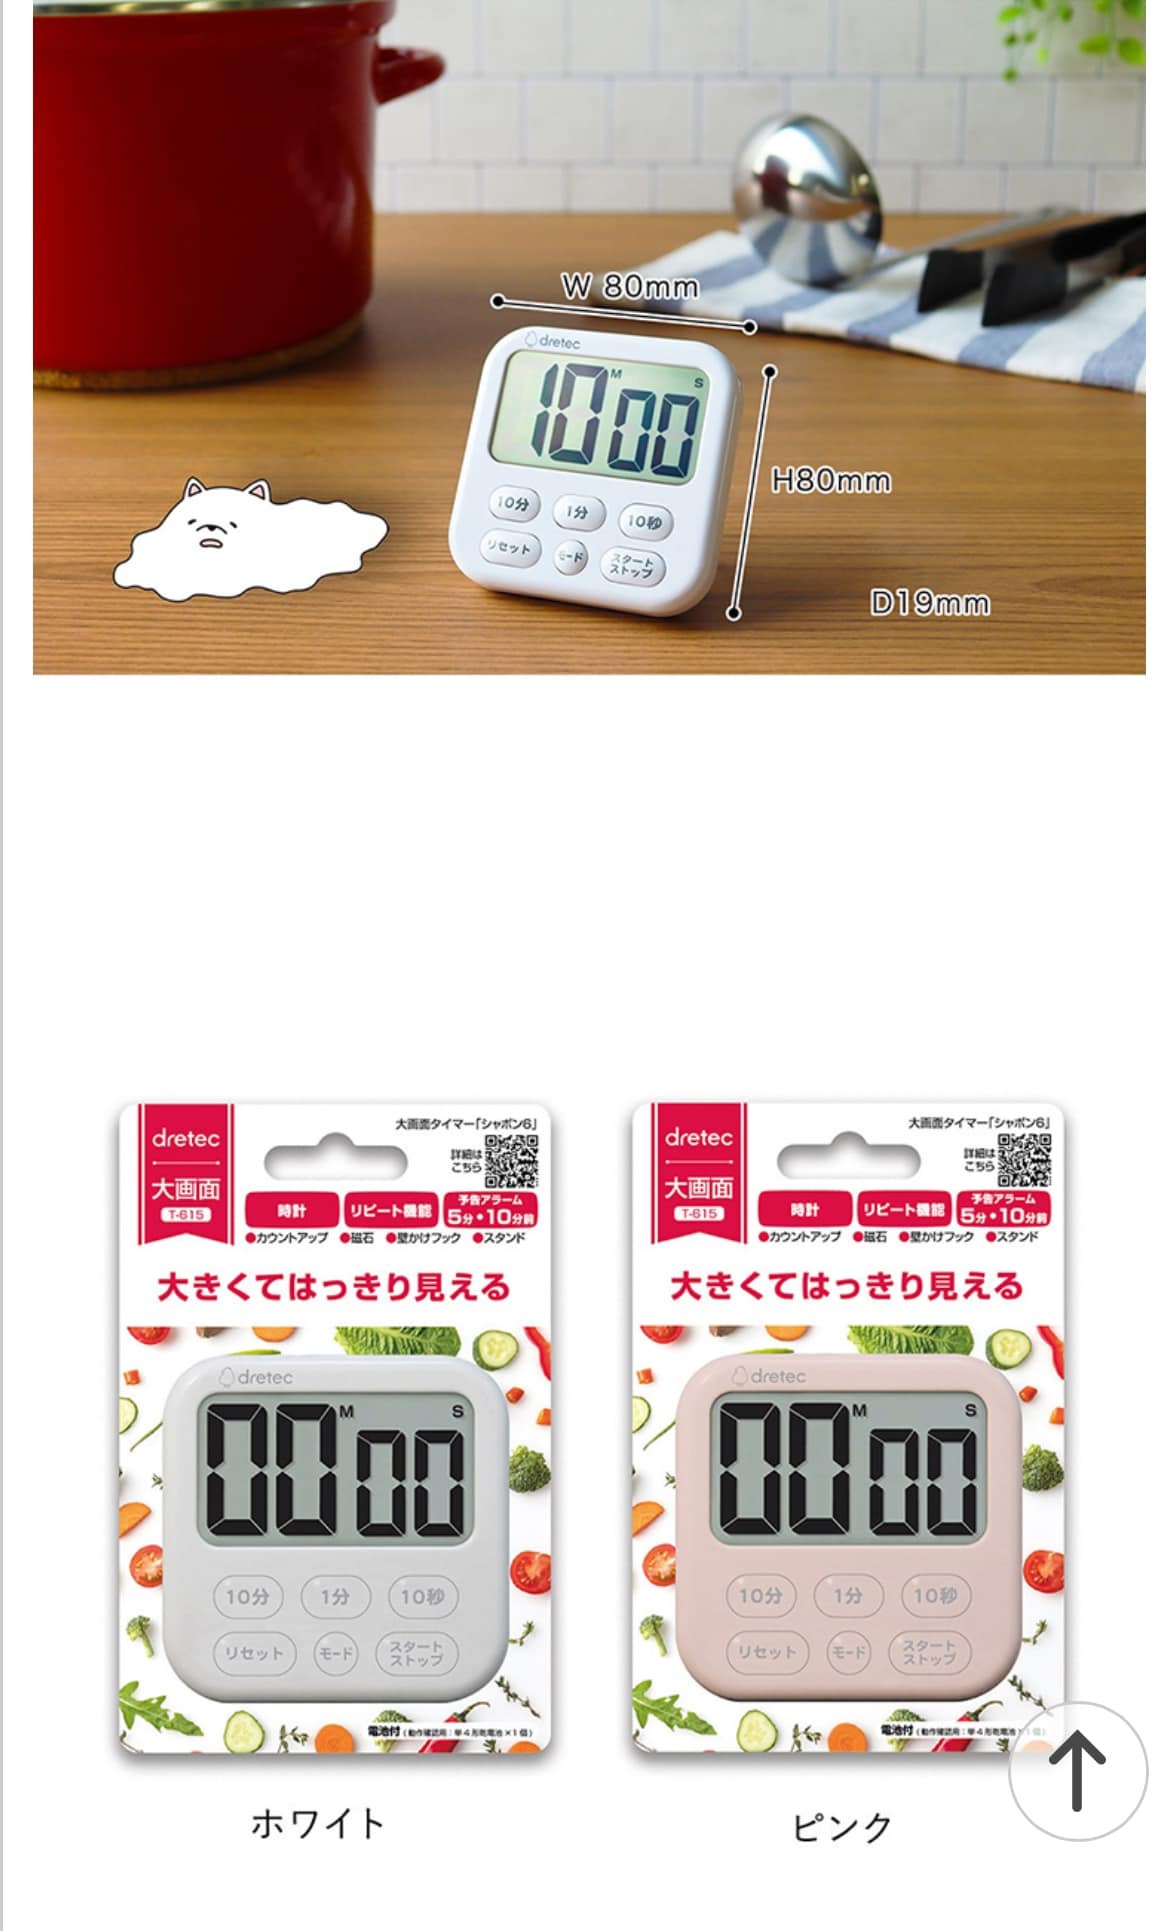 日本餐具 DRETEC大螢幕時鐘烹飪料理計時器 王球餐具 (8)